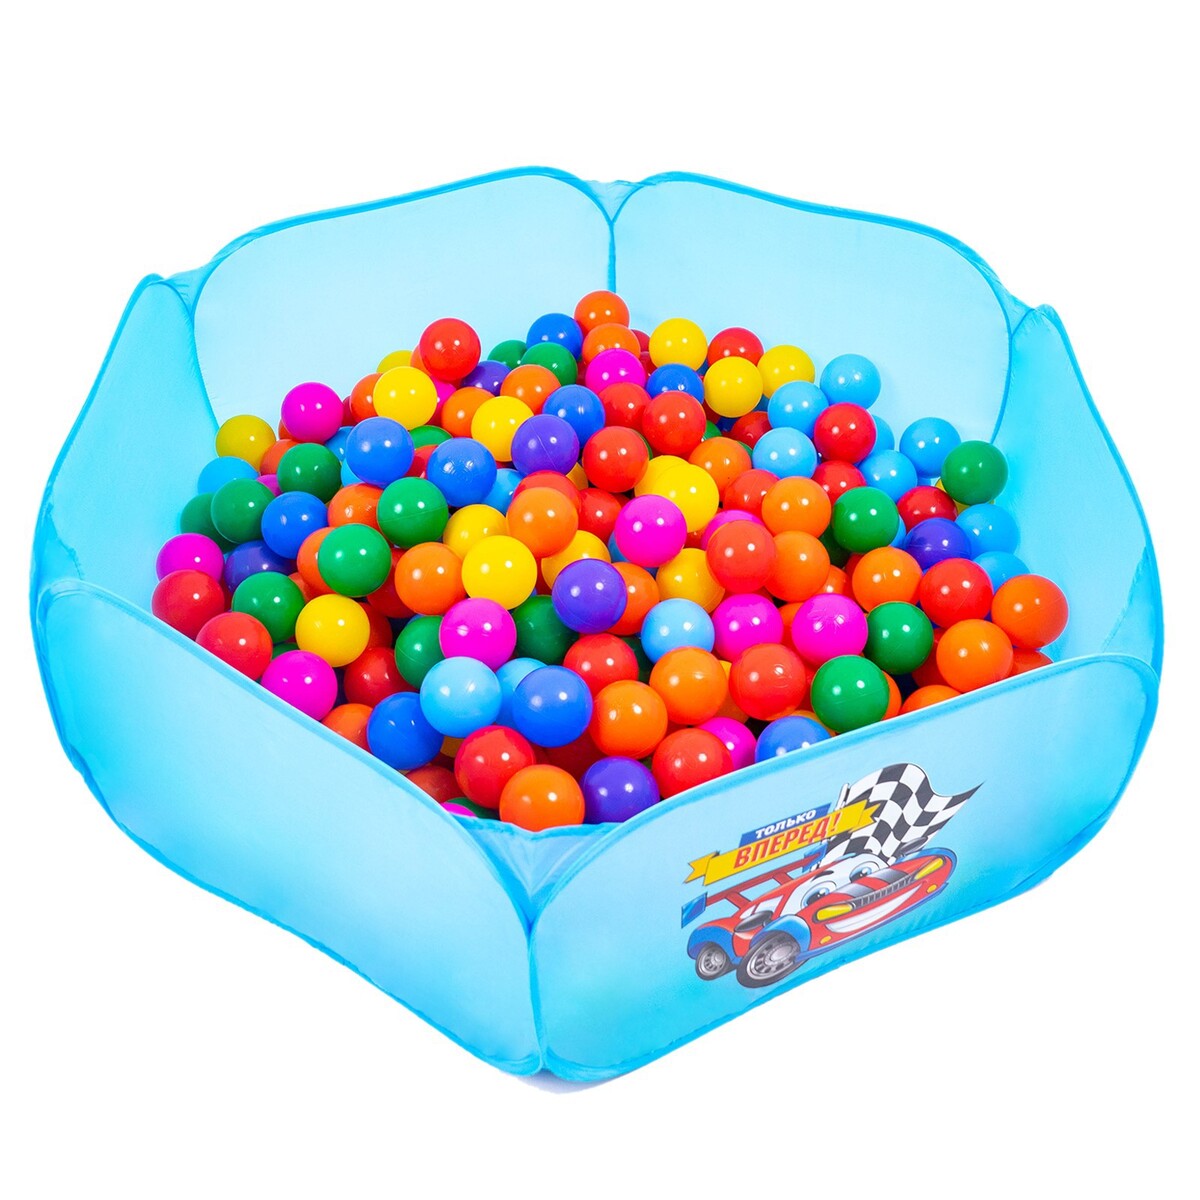 Шарики для сухого бассейна с рисунком, диаметр шара 7,5 см, набор 60 штук, разноцветные шарики для сухого бассейна 100 штук диаметр 5 см